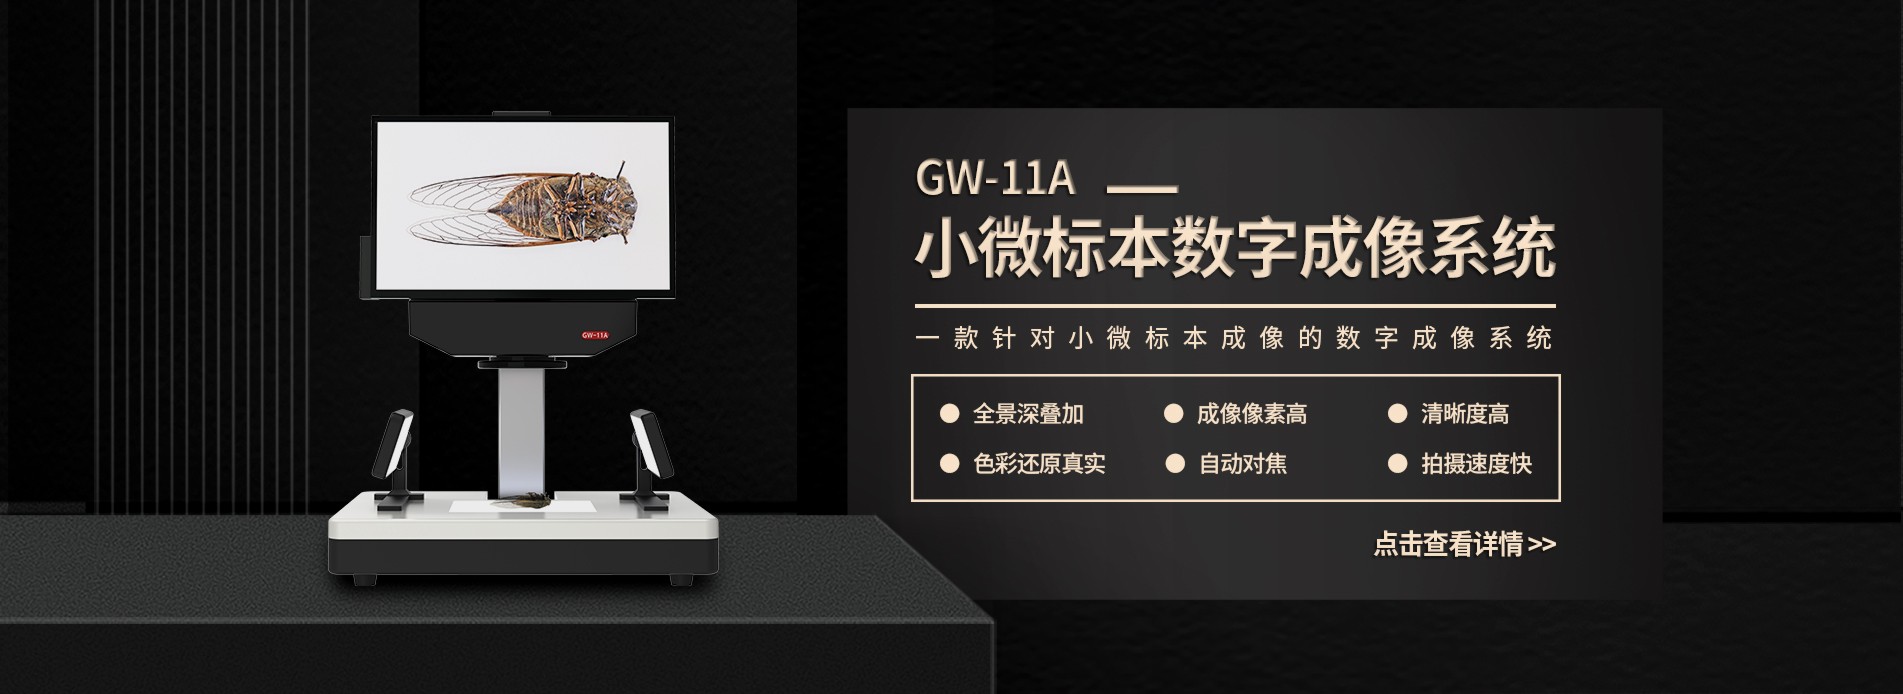 GW-11A小微标本数字成像系统